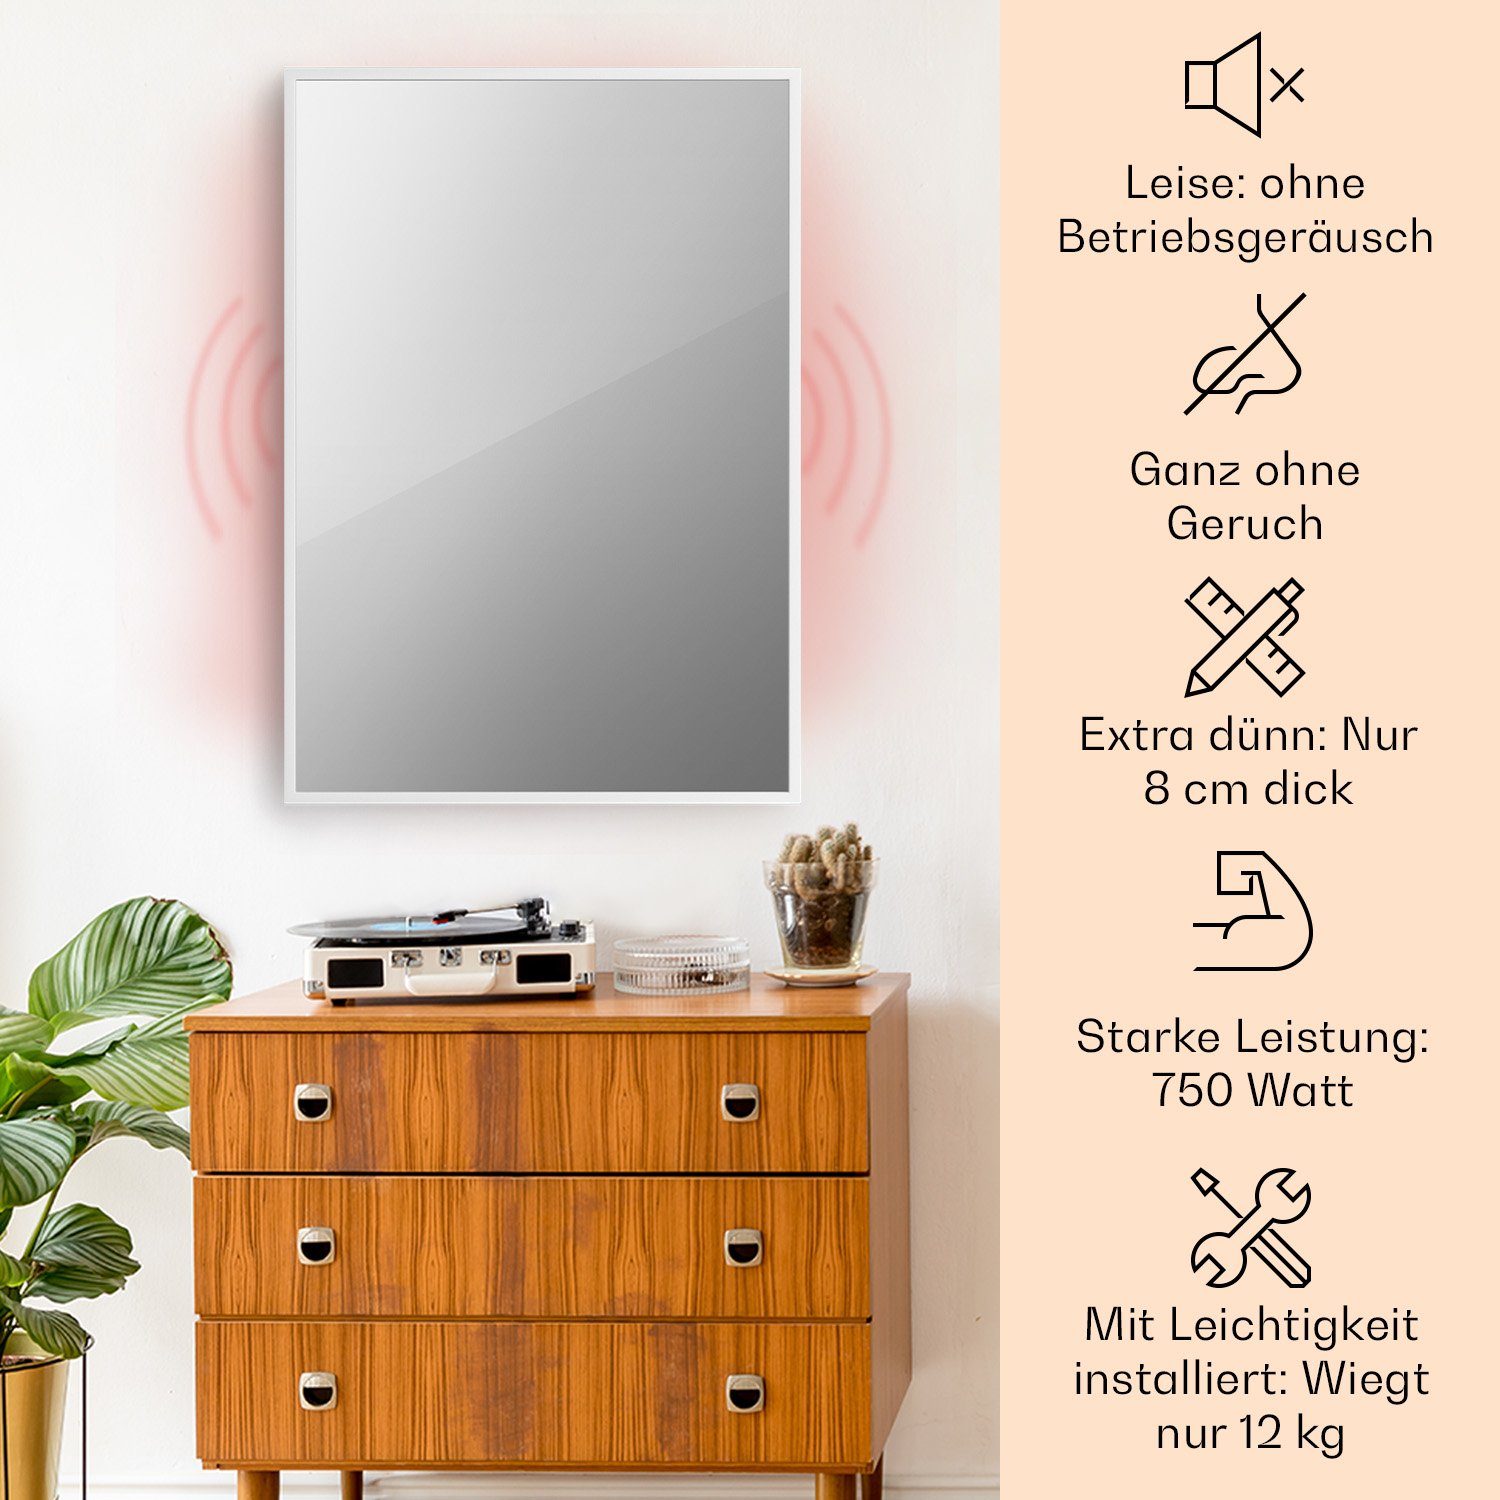 Thermostat Smart elektrische Palma Wandheizung Spiegel Infrarot La elektrisch Heizkörper W white, 750 Klarstein Heizung